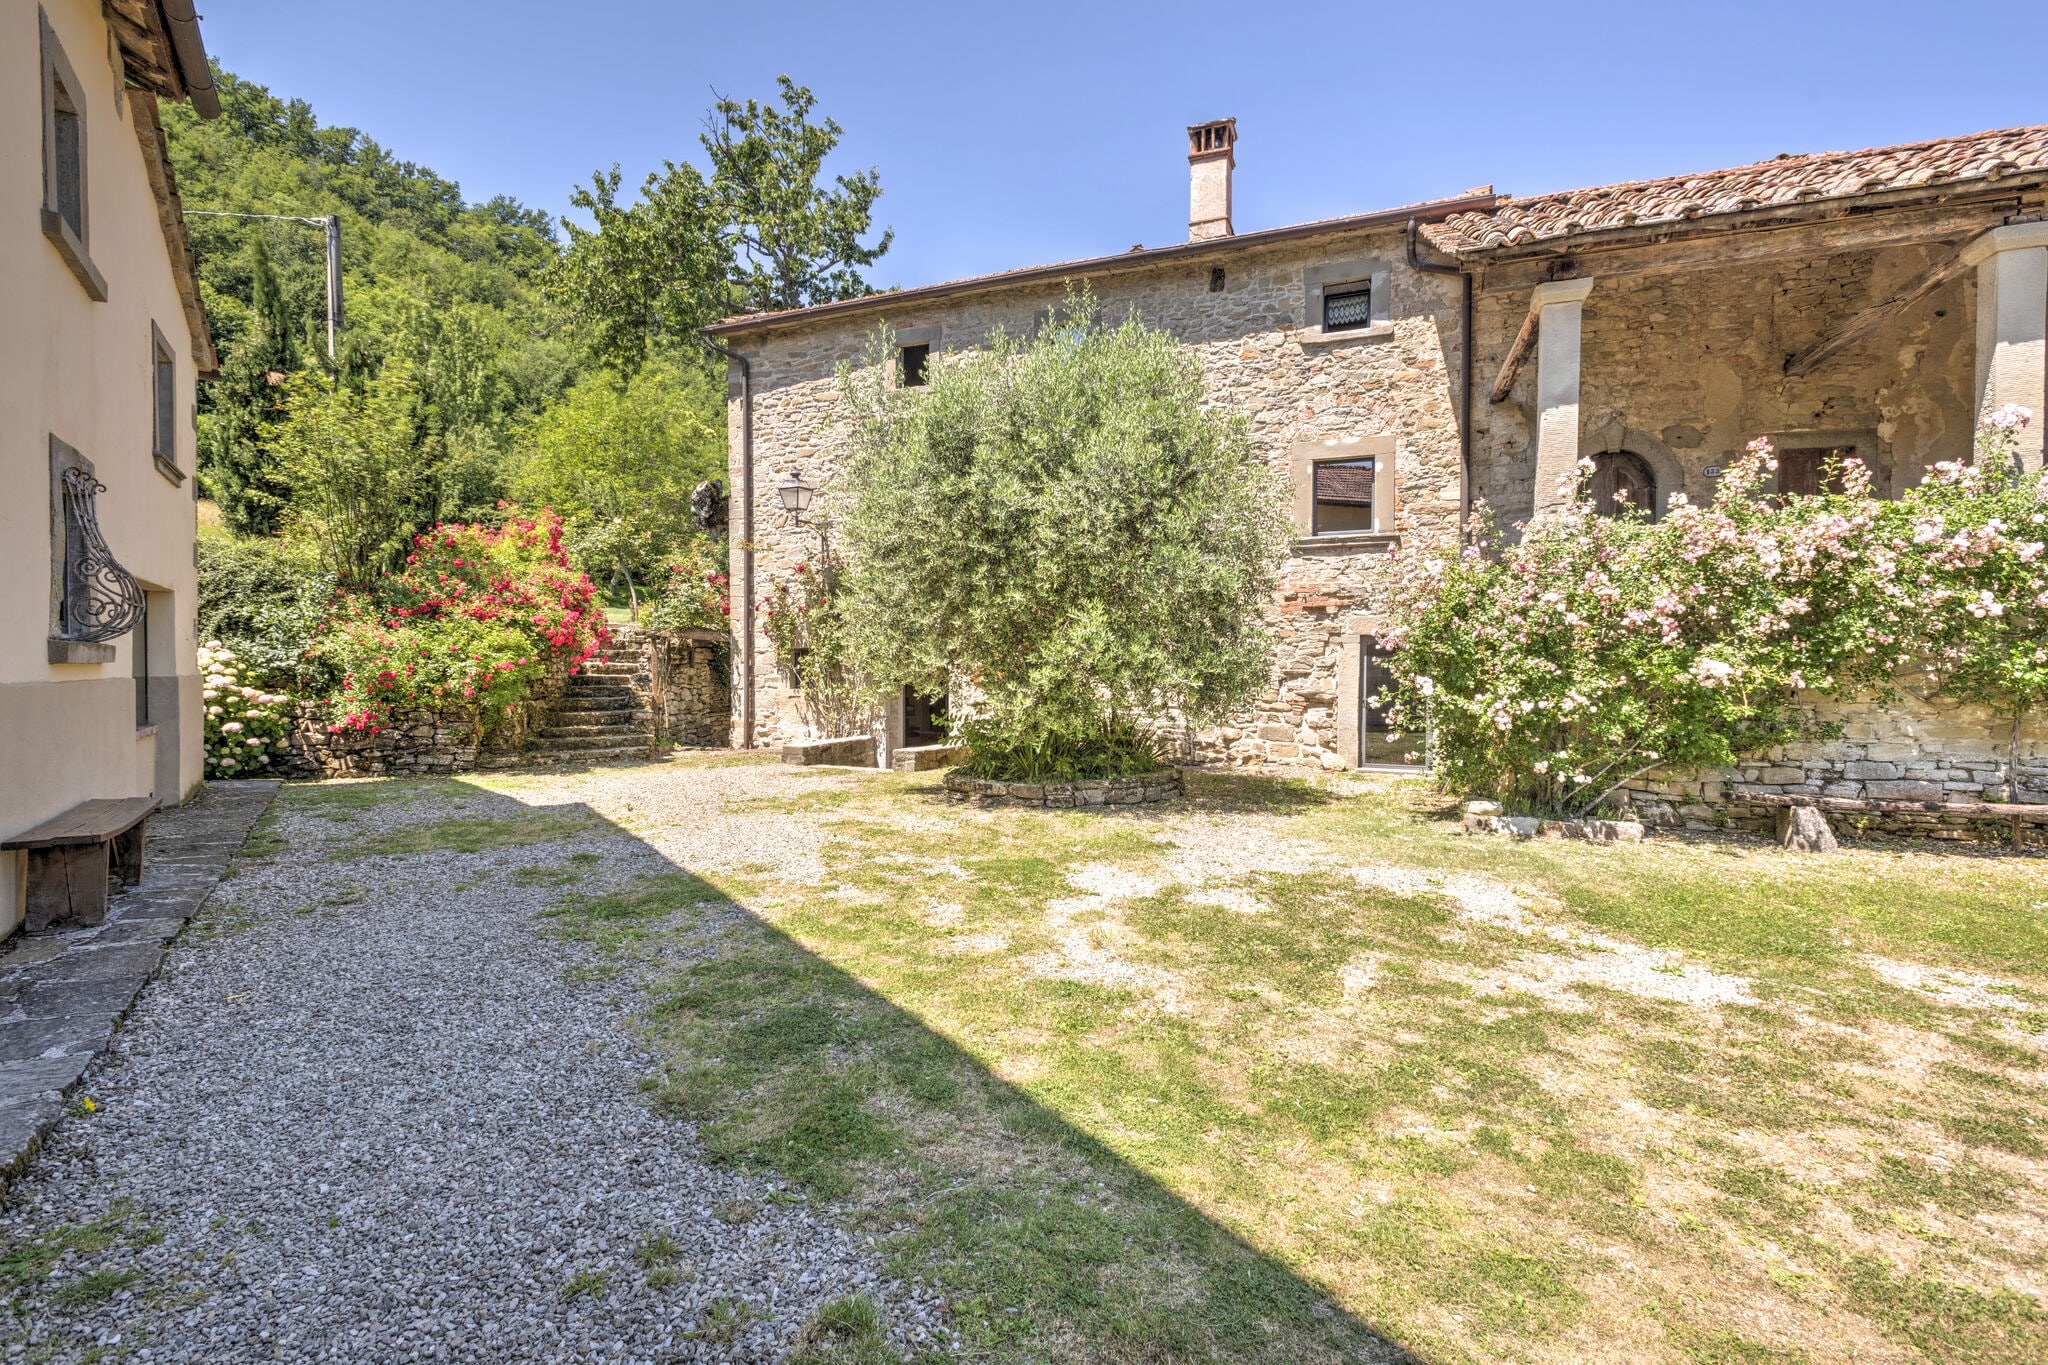 Appartement in het historische middeleeuwse dorp Serignana met zwembad en tuin